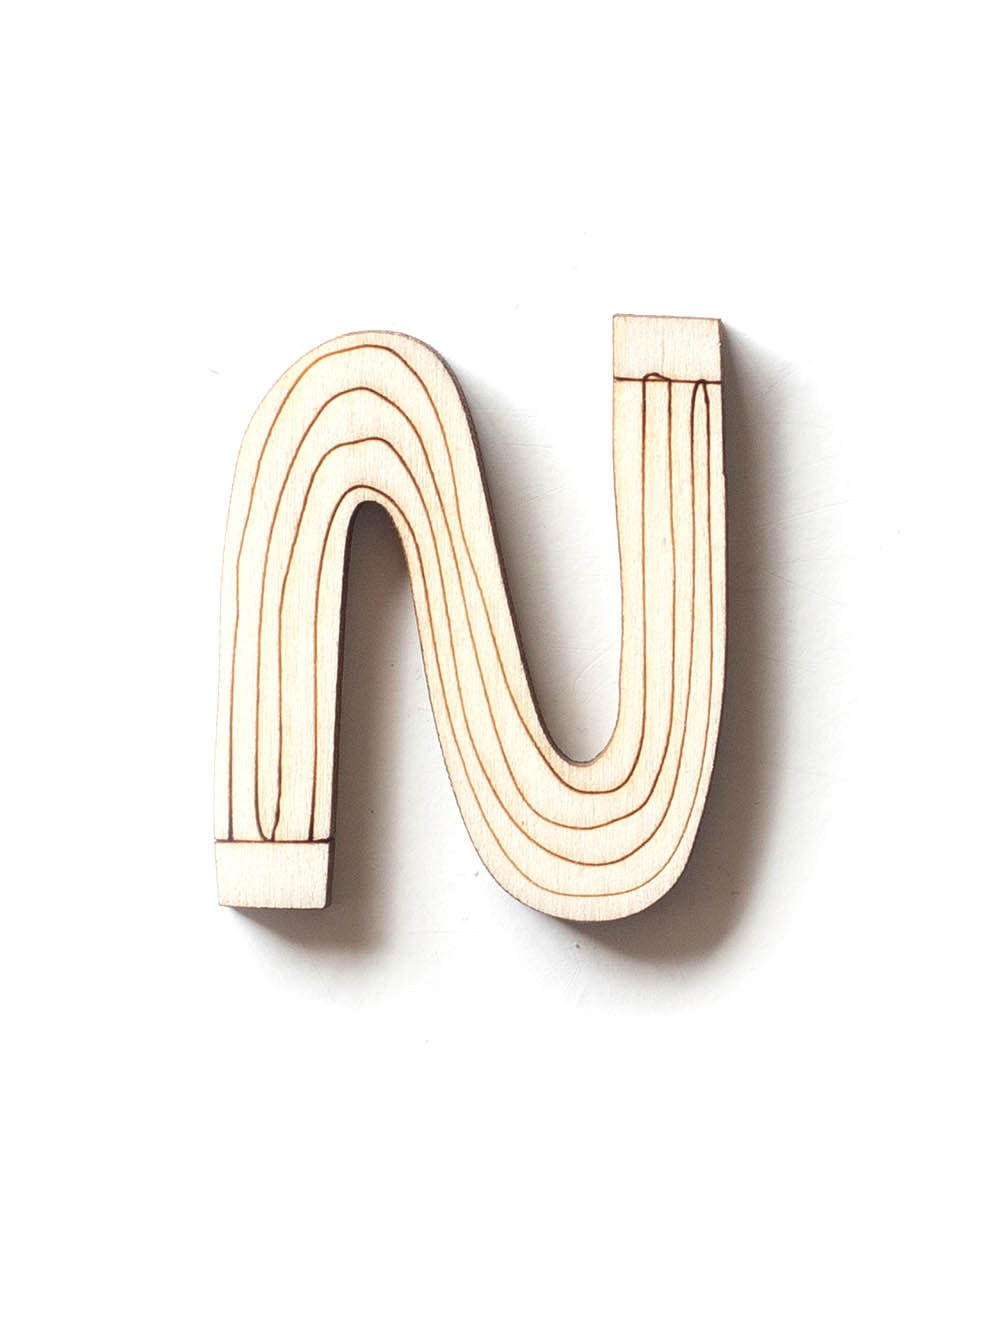 Holzbuchstabe N fürs Kinderzimmer mit Muster Streifen